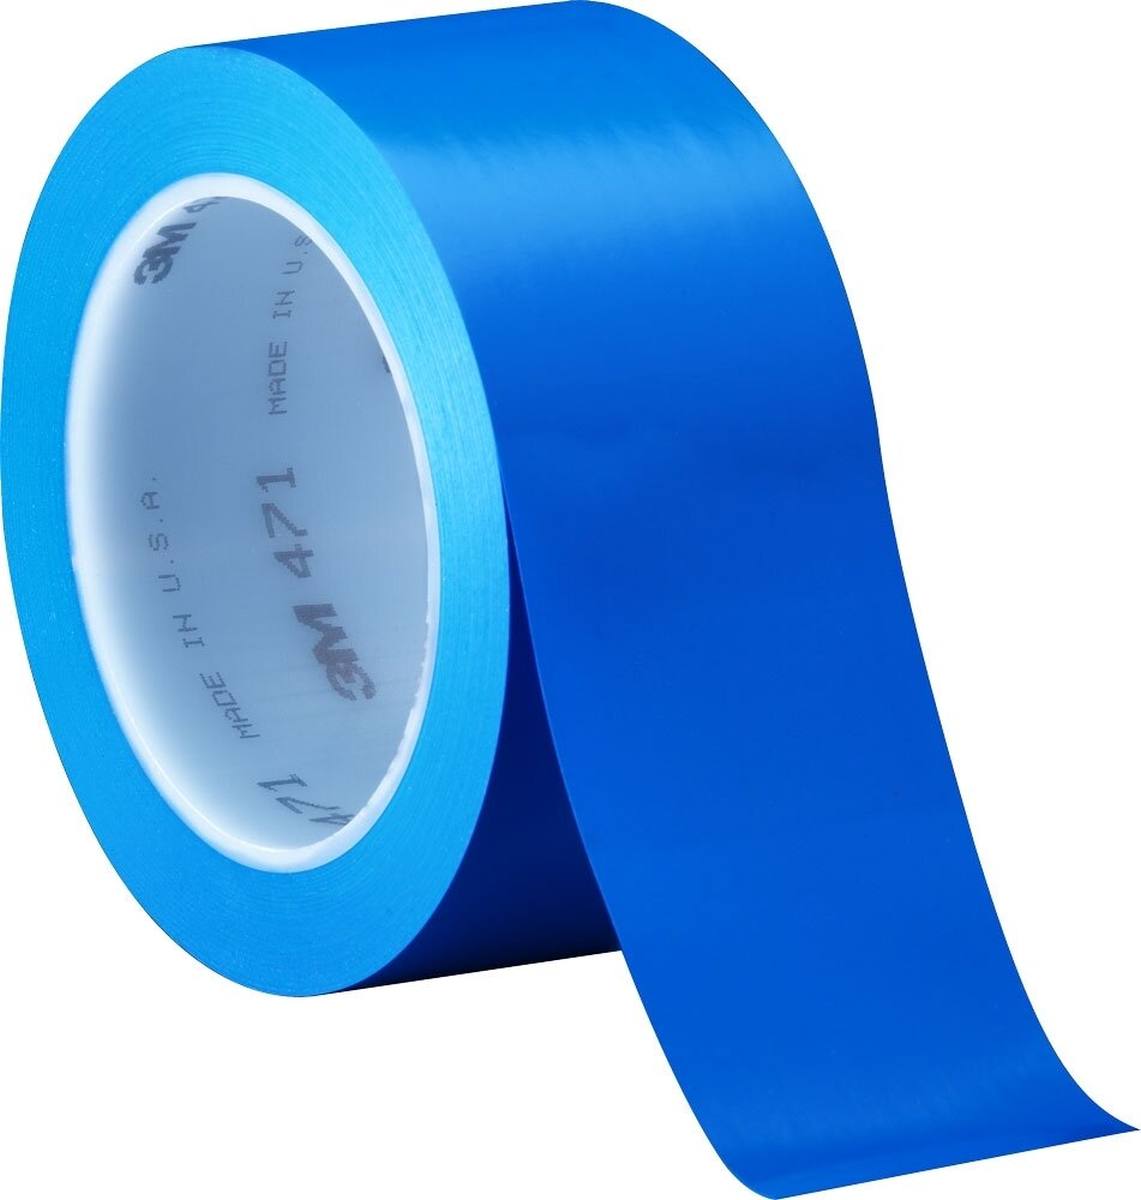 Nastro adesivo 3M in PVC morbido 471 F, blu, 6 mm x 33 m, 0,13 mm